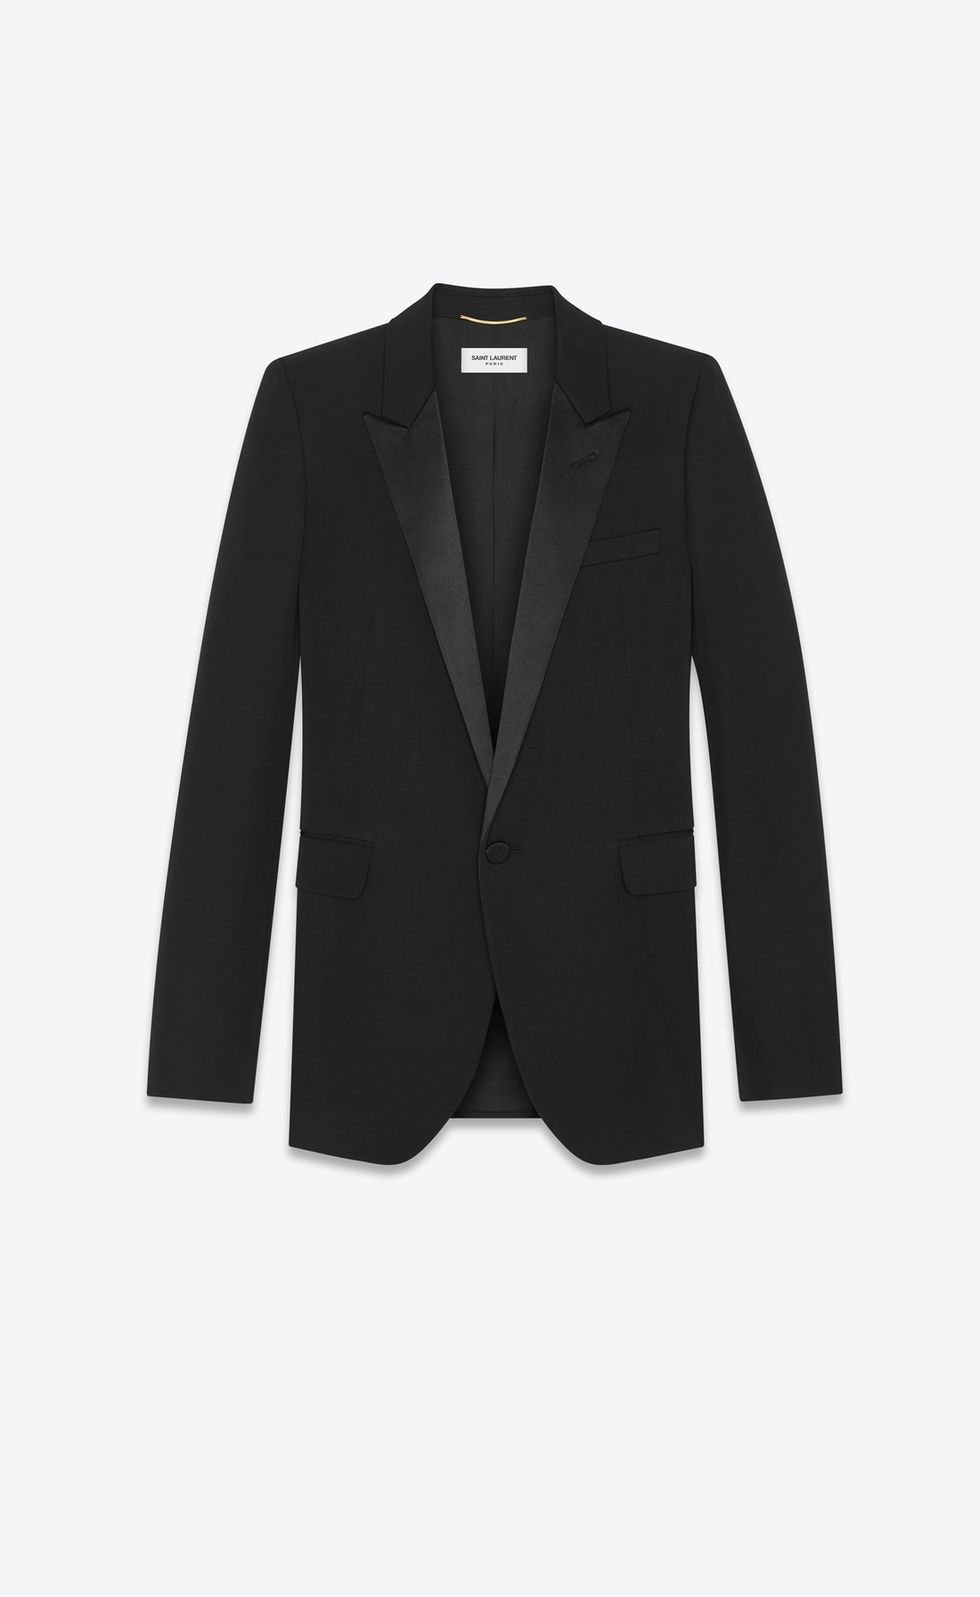 Clothing, Outerwear, Blazer, Black, Jacket, Suit, Formal wear, Sleeve, Top, Tuxedo, 